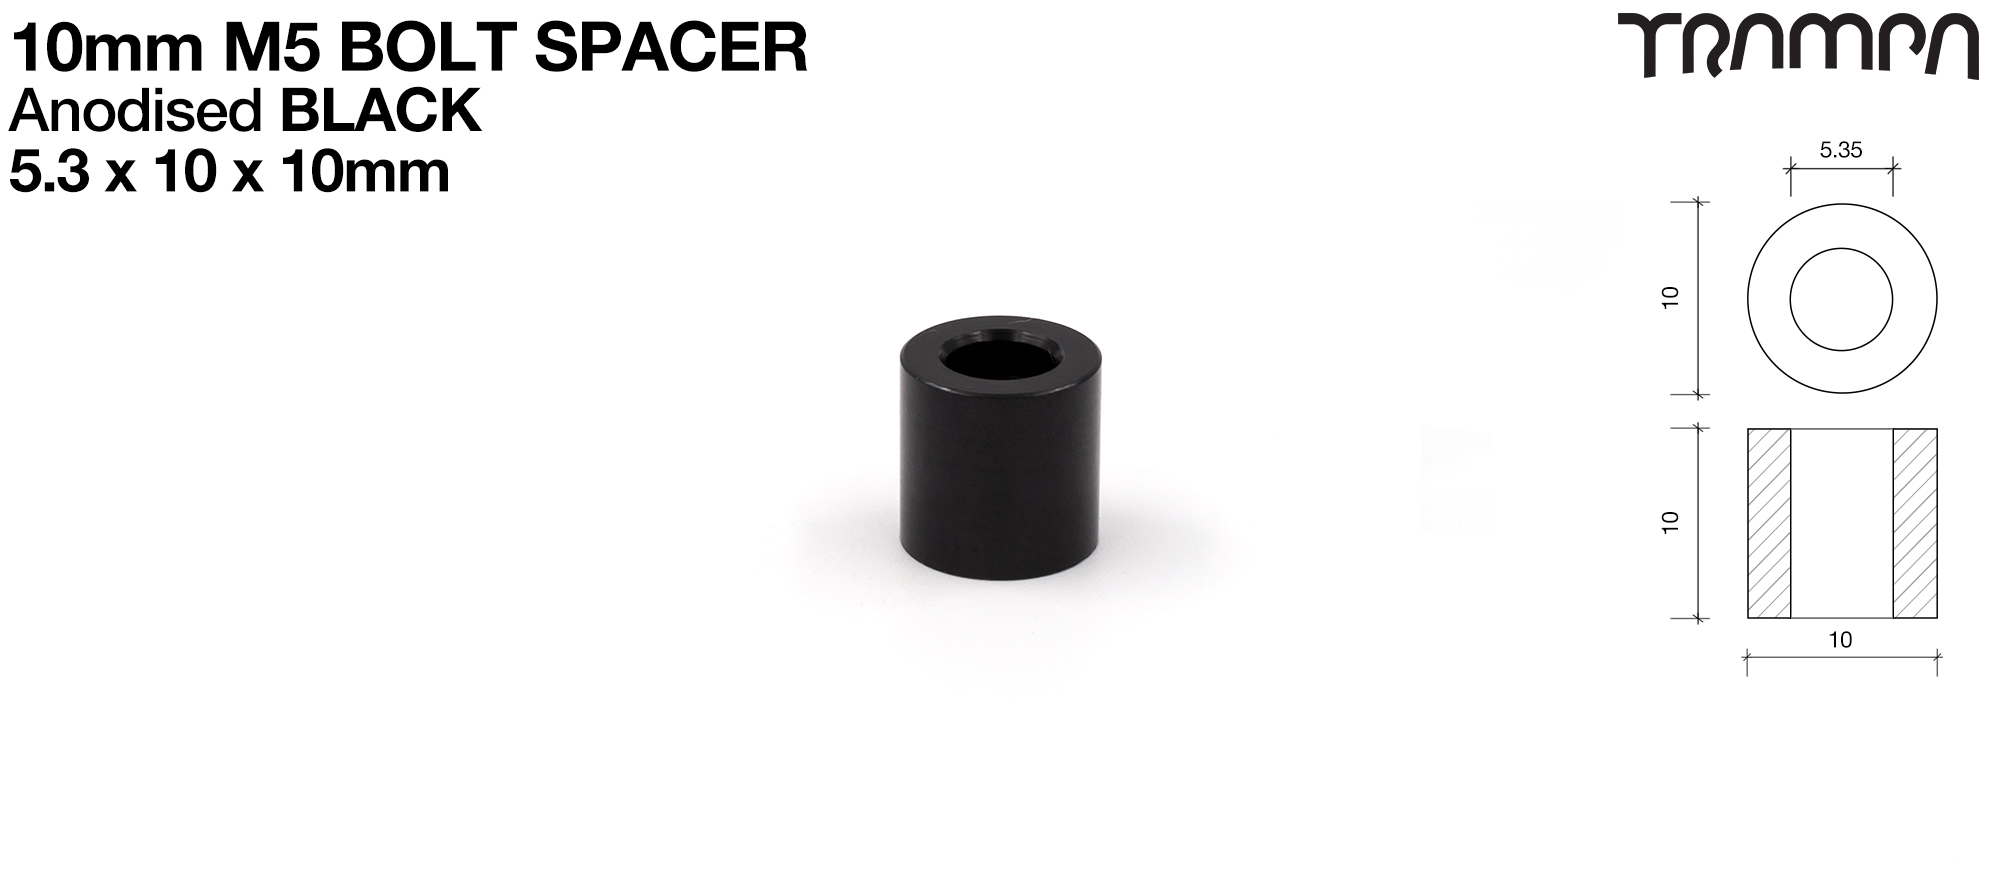 BLACK Anodised 10mm Spacers